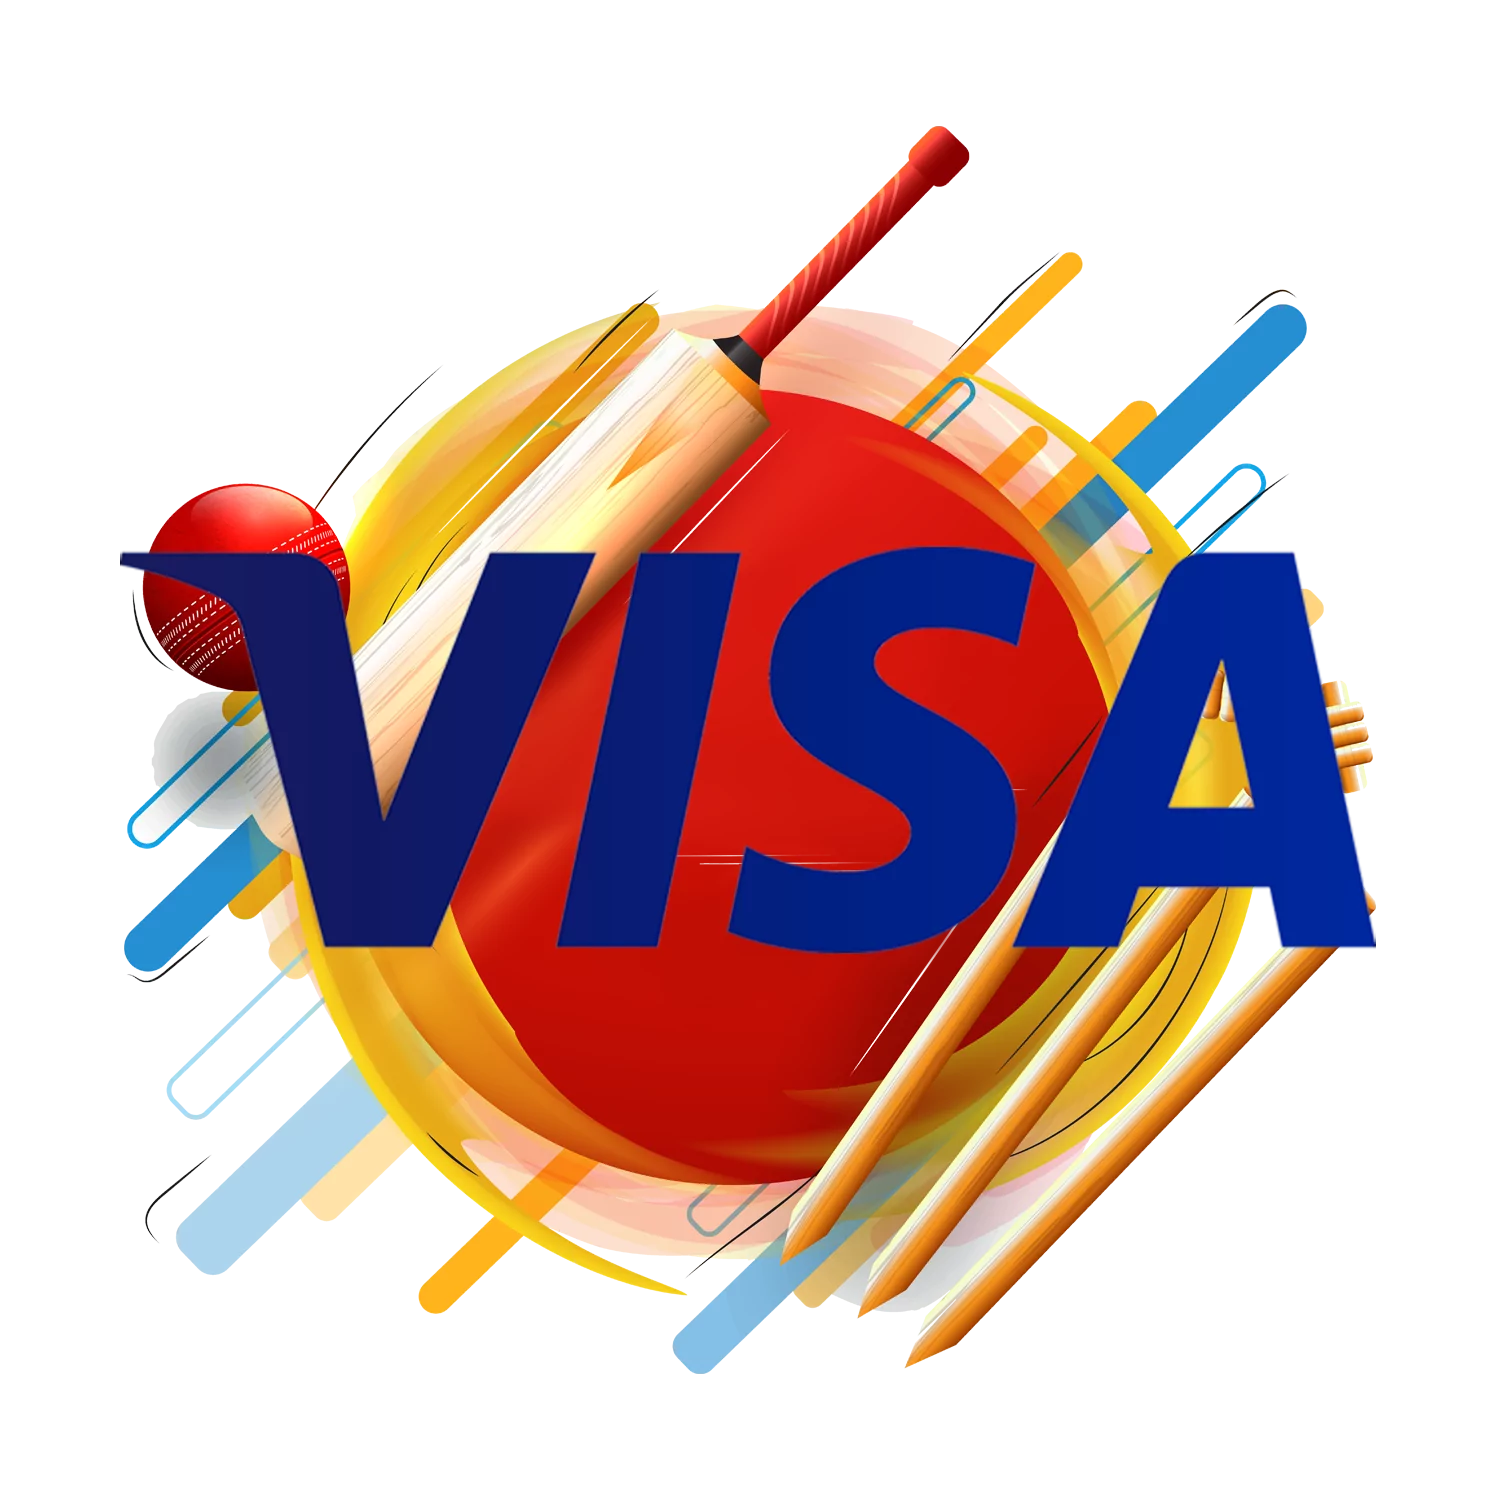 सट्टेबाजी के लिए Visa कार्ड का उपयोग करना सीखें।